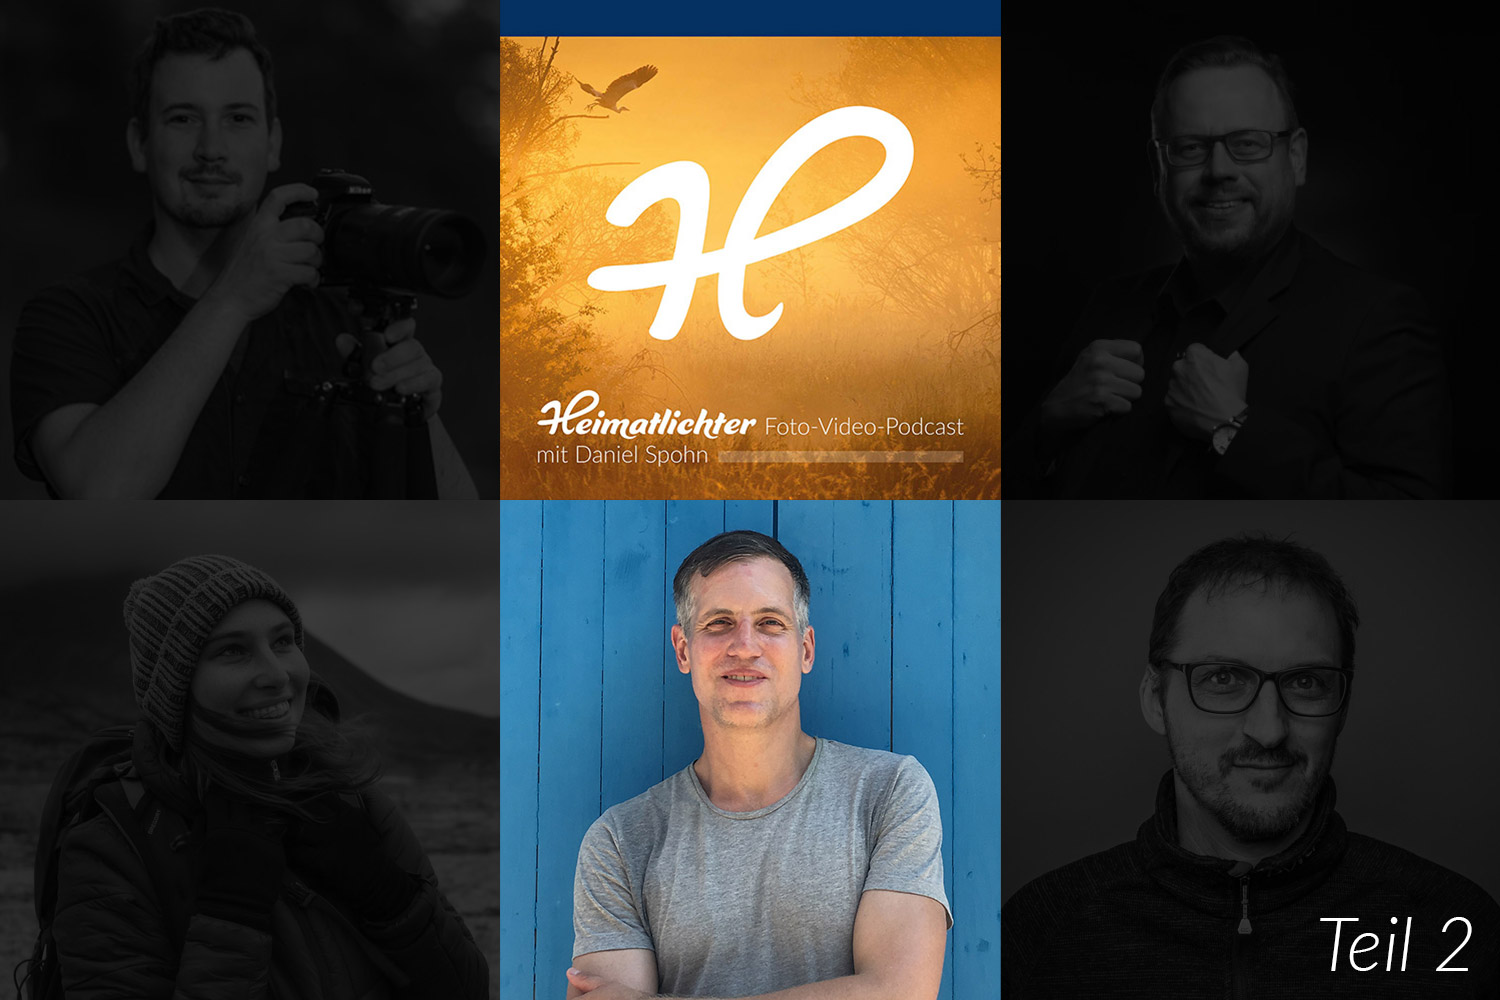 Heimatlichter Foto-Video-Podcast mit Daniel Spohn, Episode 4 mit Kai Behrmann - Journalist, Fotograf, Podcaster, Fototrainer - Thema: Bildaussage und Kreativität in der Street Photography